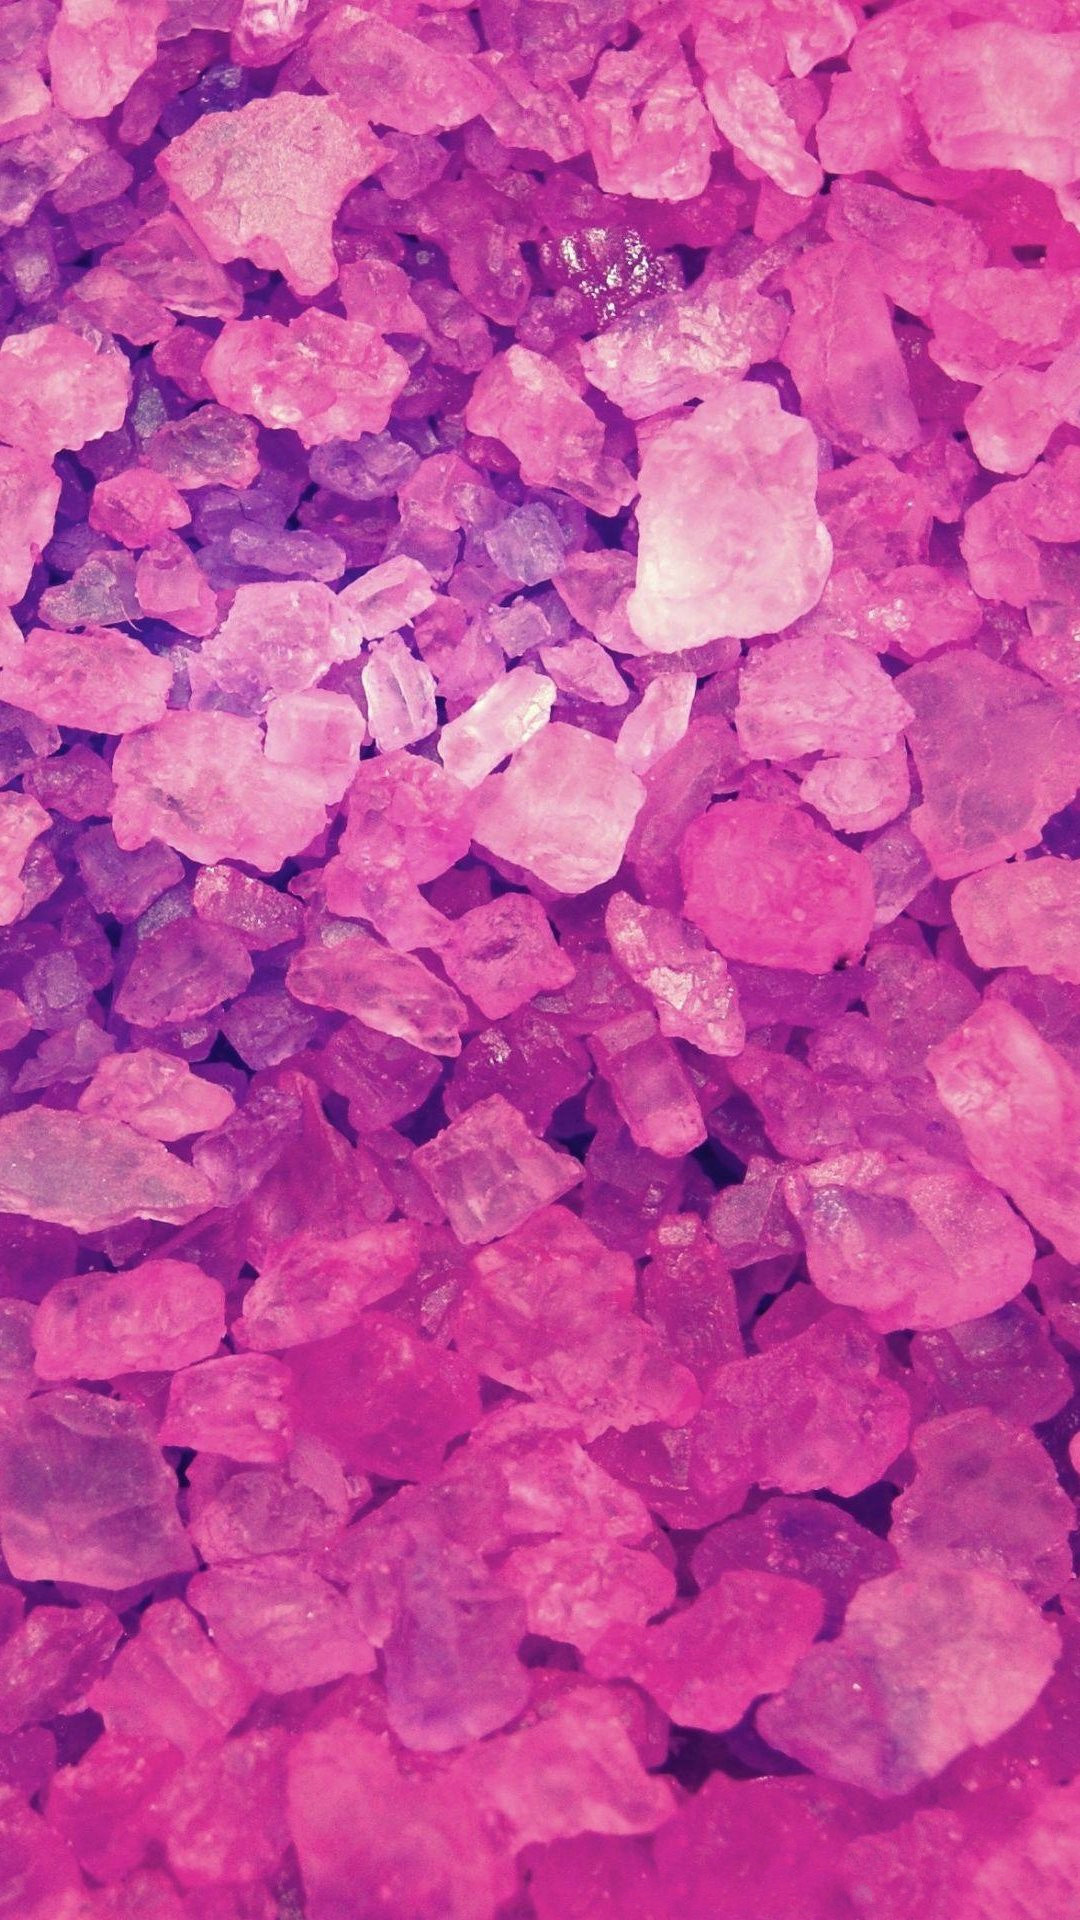 1080x1920 HD Bright pink diamond Â«Vivid PinkÂ» wallpaper | Bright pink diamond Â«Â»  wallpapers hd | Pinterest | Bright pink and Diamond